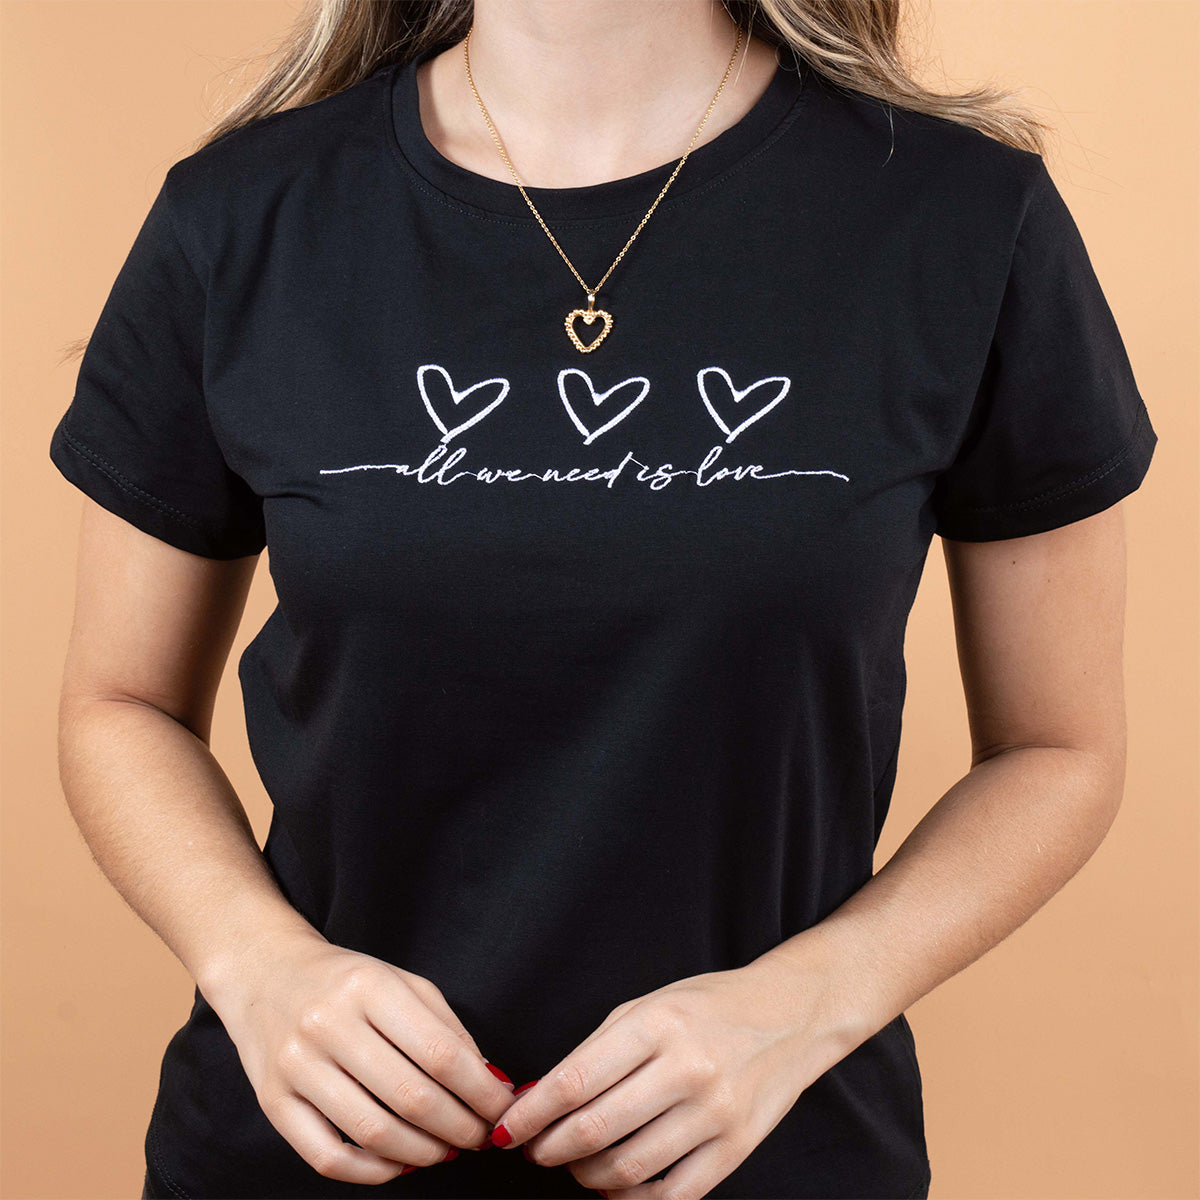 camiseta color negro con estampado de corazones